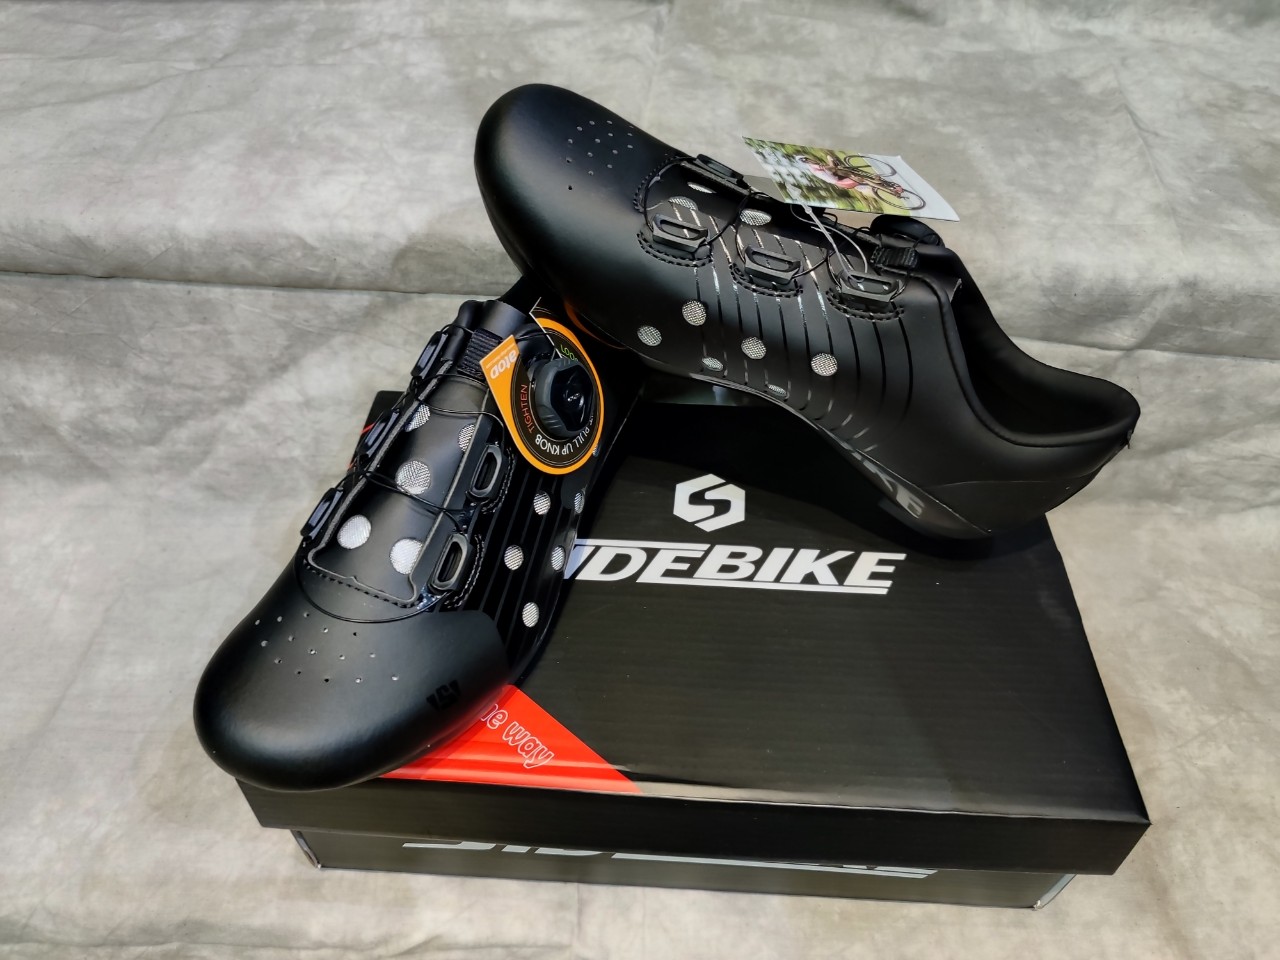 Giày can xe đạp dòng Road 1 khóa vặn SIDE BIKE SD-026 màu đen